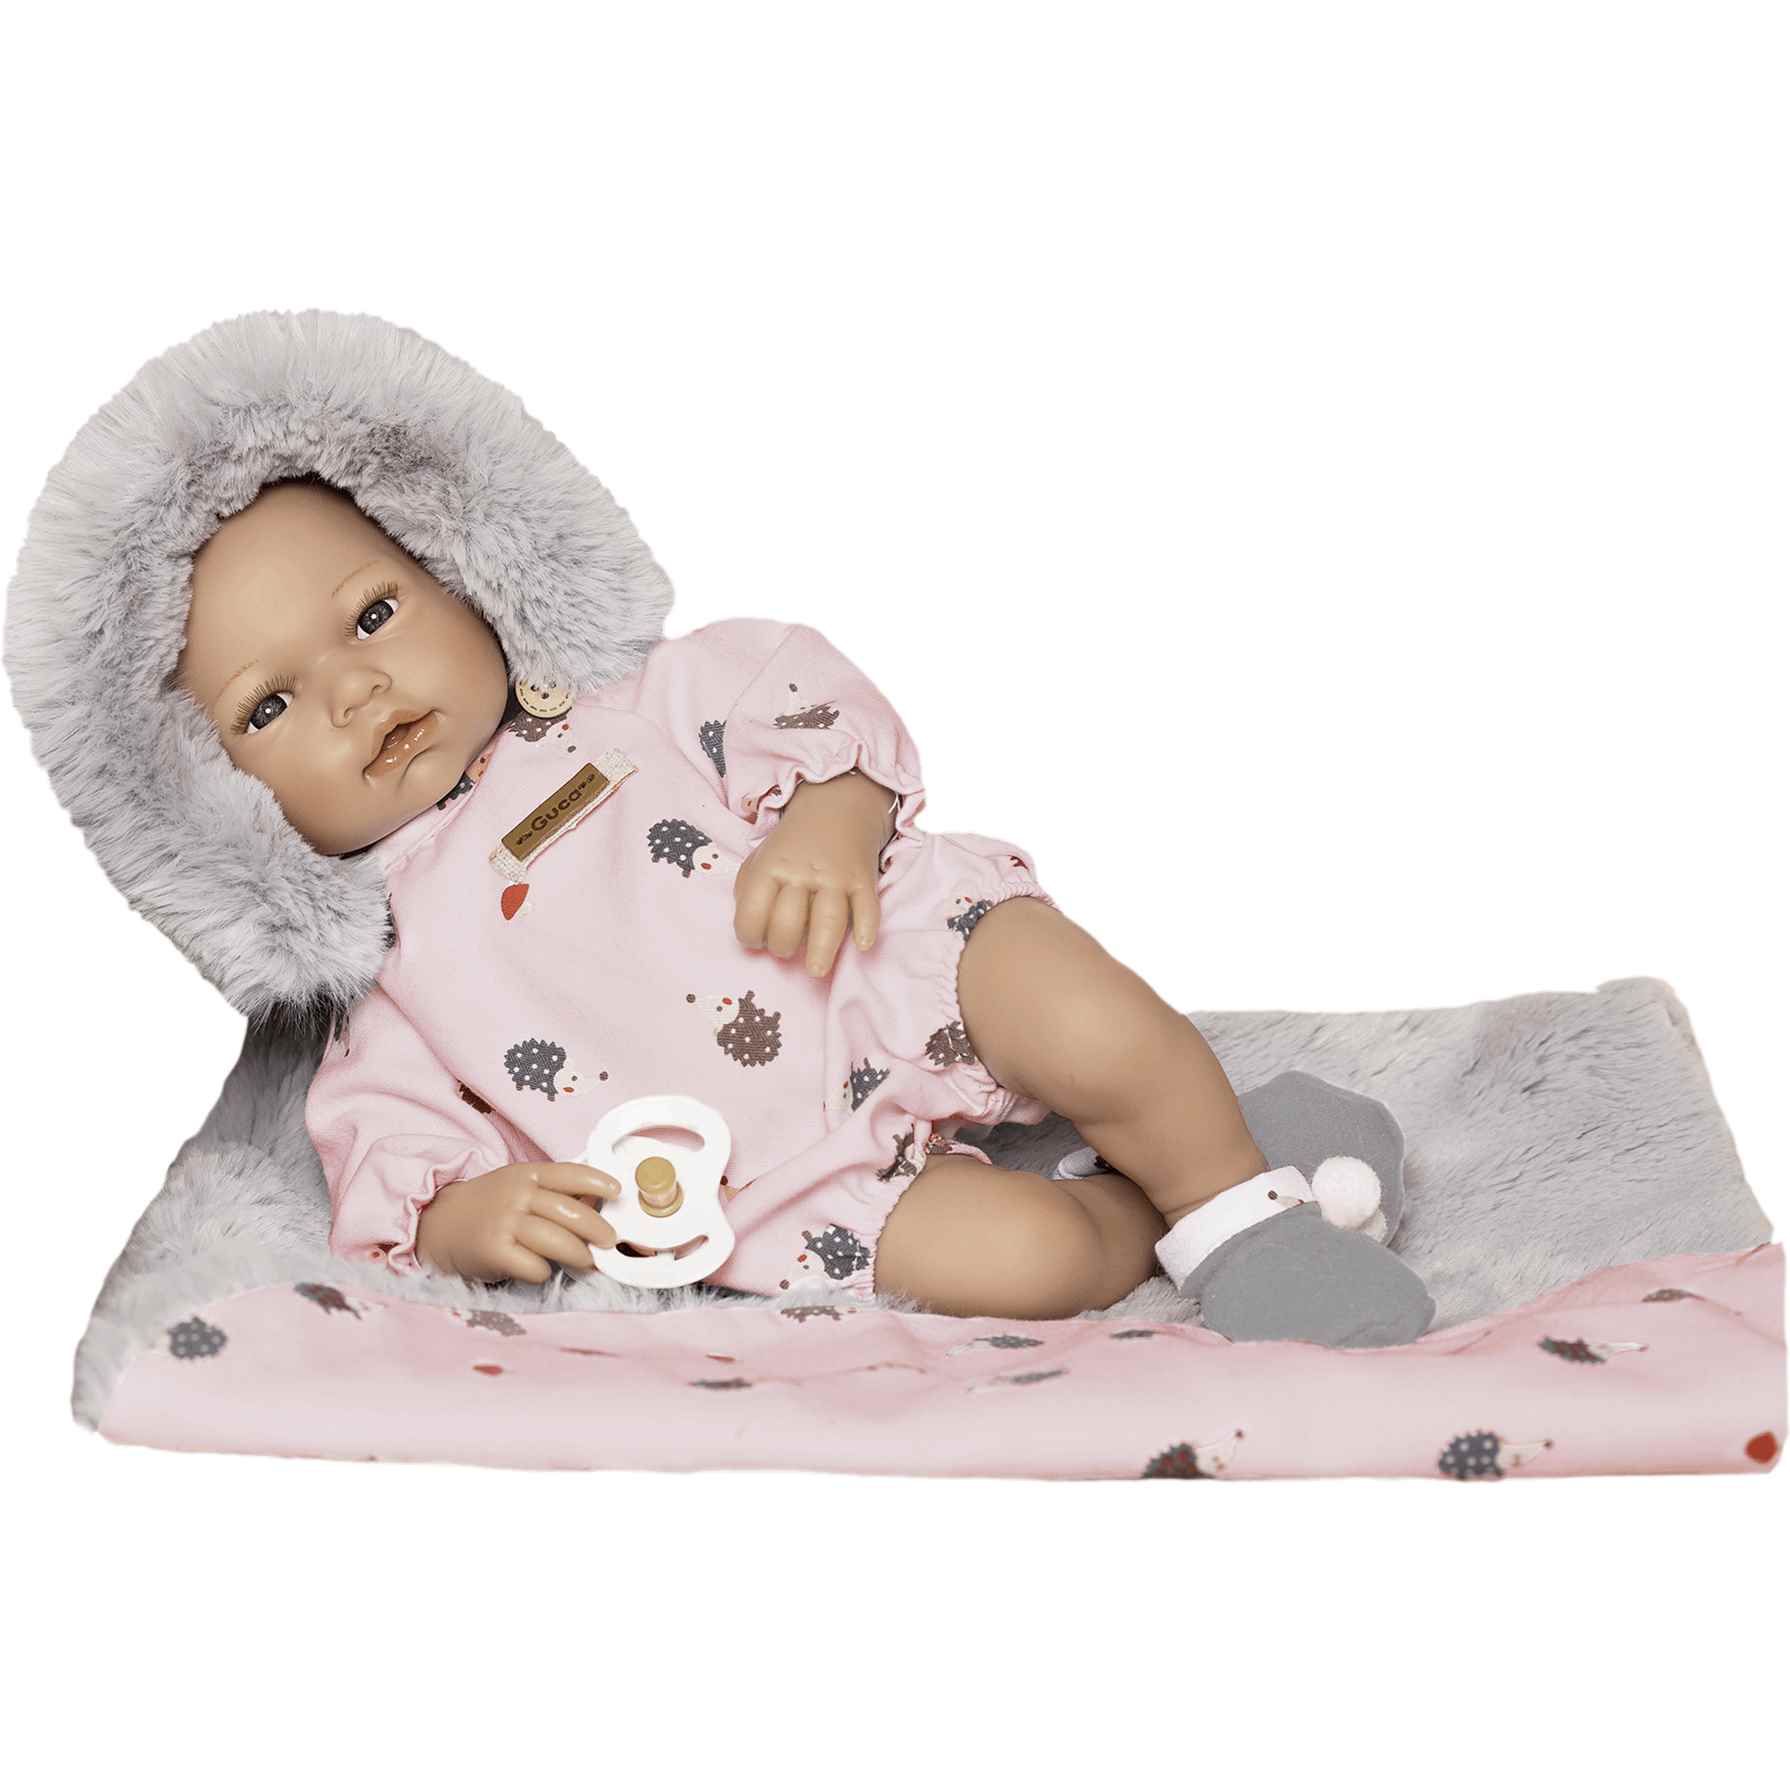 entonces Cita Por favor Comprar Bebé Triana Con Pelele Rosa Erizos | Toy Planet